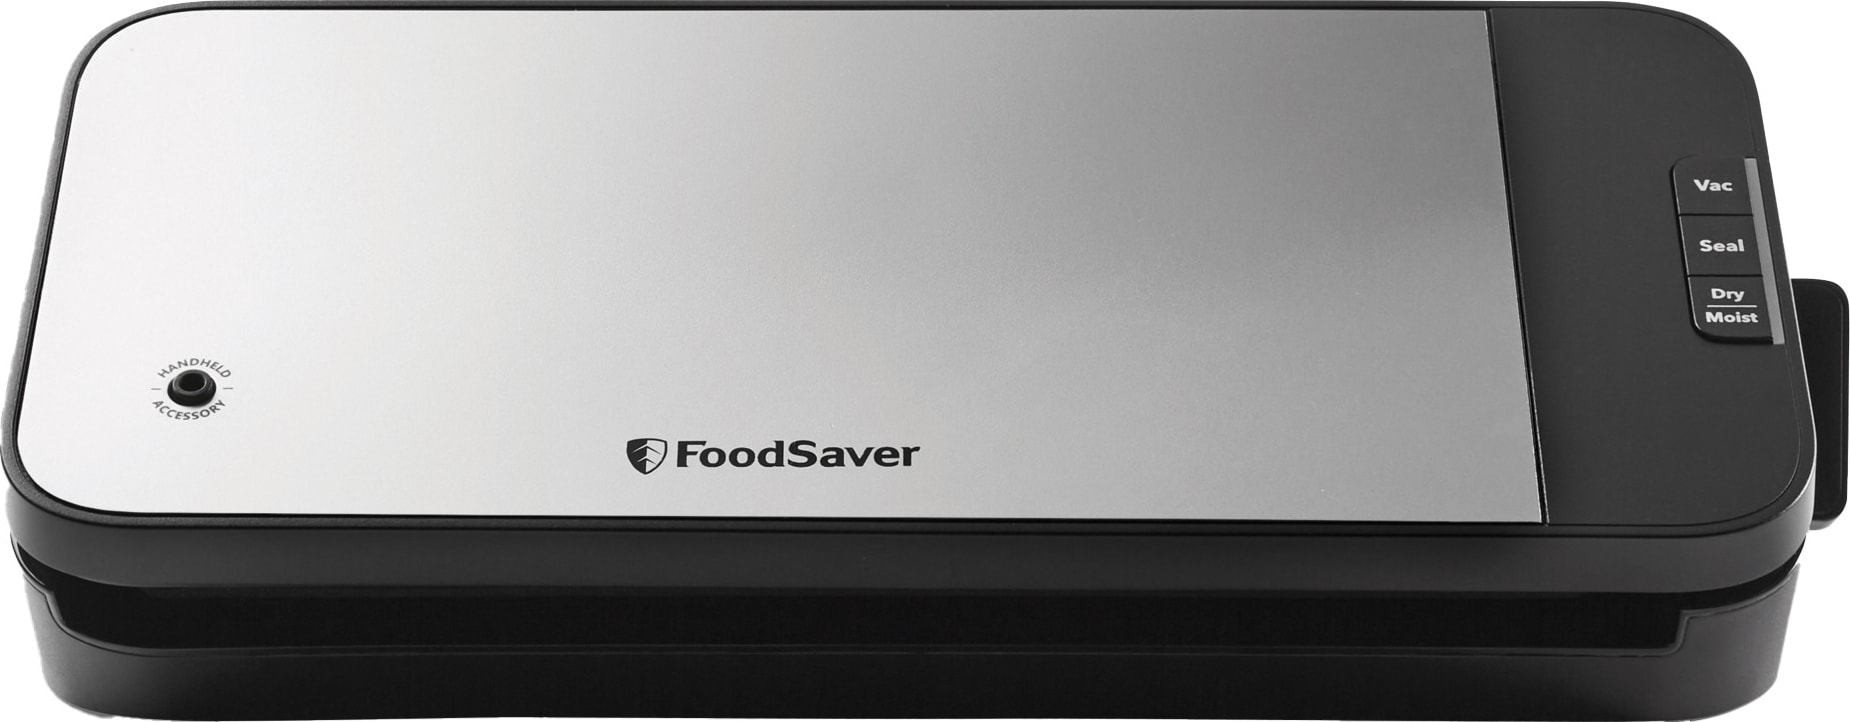 FoodSaver vakuumpakker VS2190x